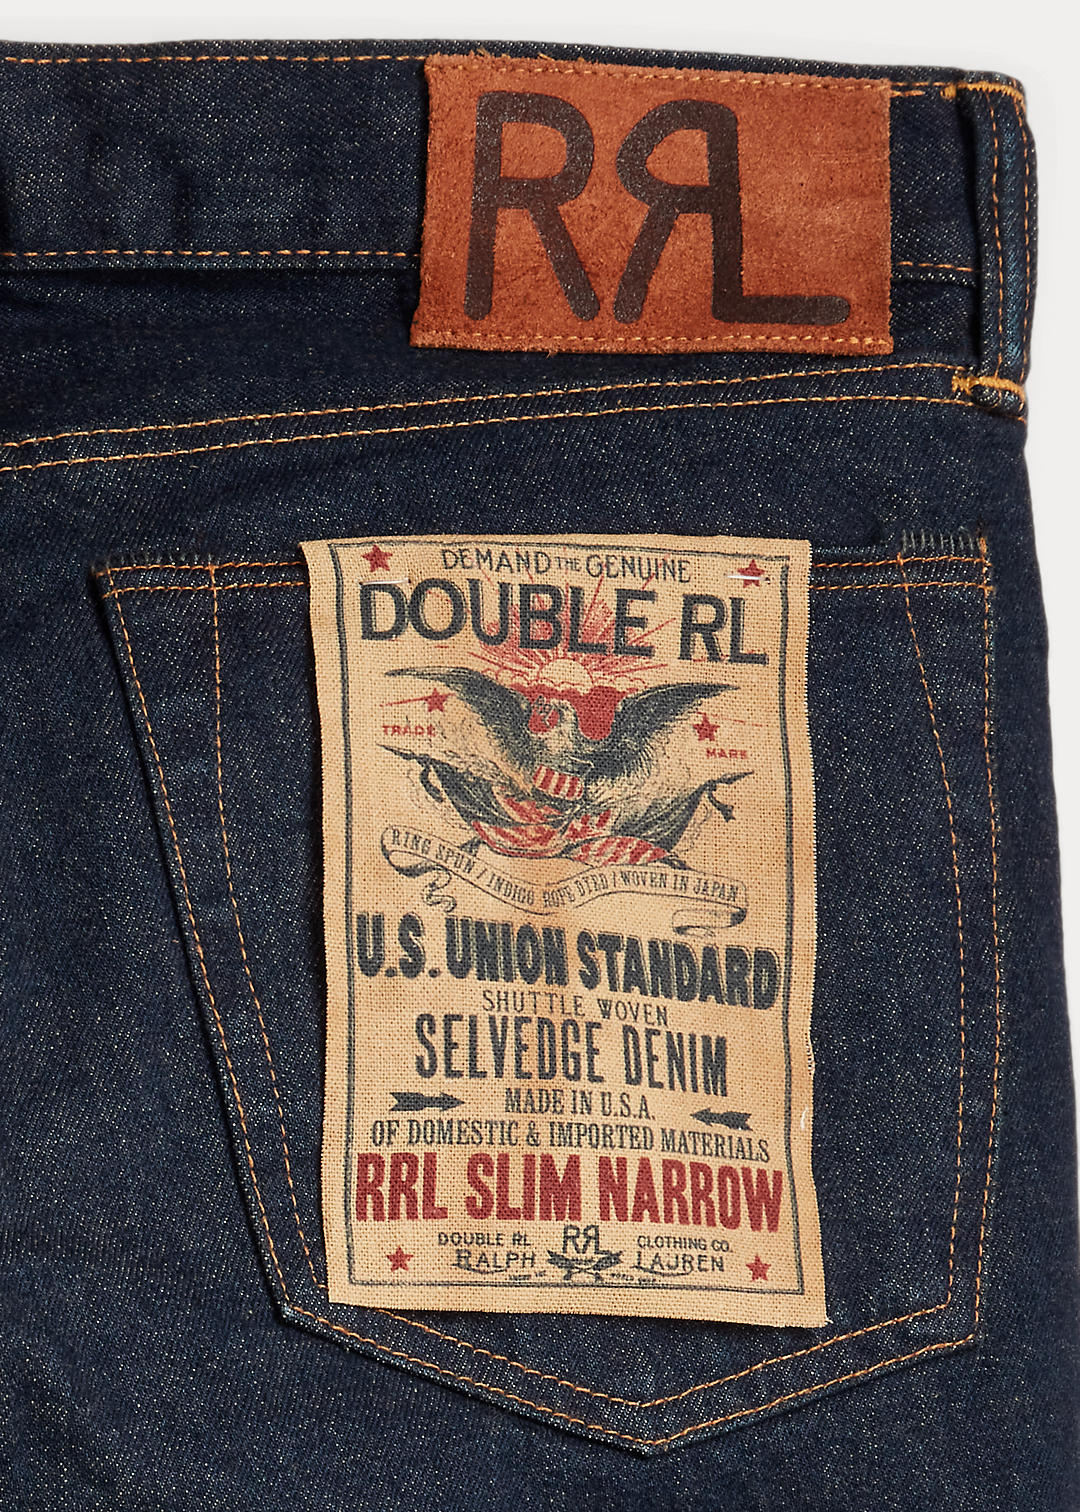 RRL Slim Narrow Selvedge Jean 8